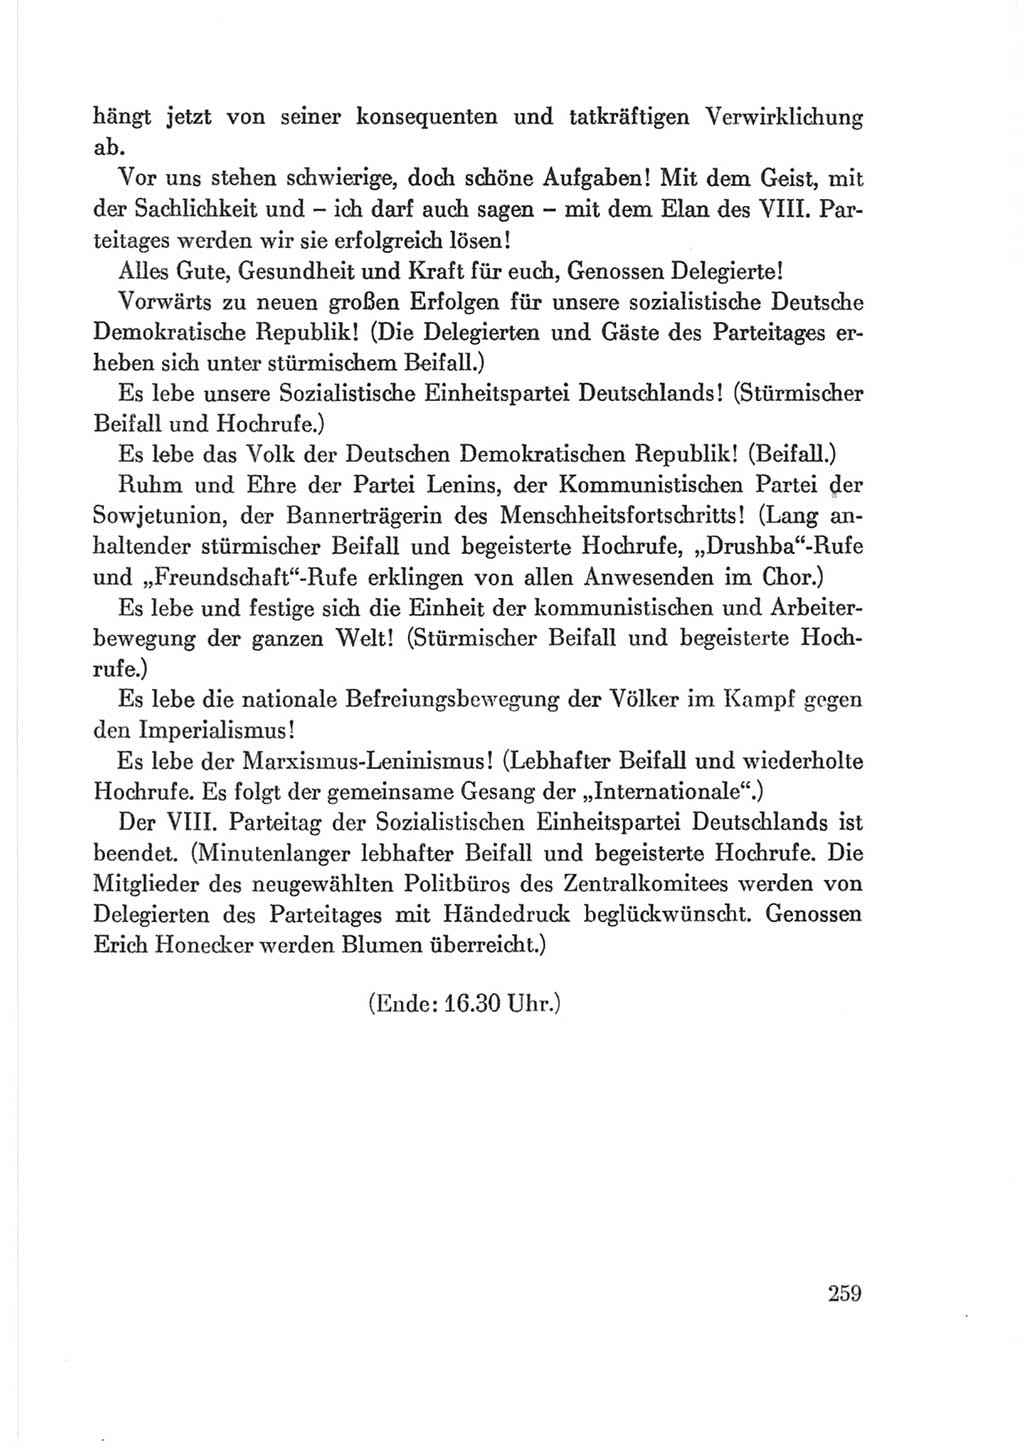 Protokoll der Verhandlungen des Ⅷ. Parteitages der Sozialistischen Einheitspartei Deutschlands (SED) [Deutsche Demokratische Republik (DDR)] 1971, Band 2, Seite 259 (Prot. Verh. Ⅷ. PT SED DDR 1971, Bd. 2, S. 259)